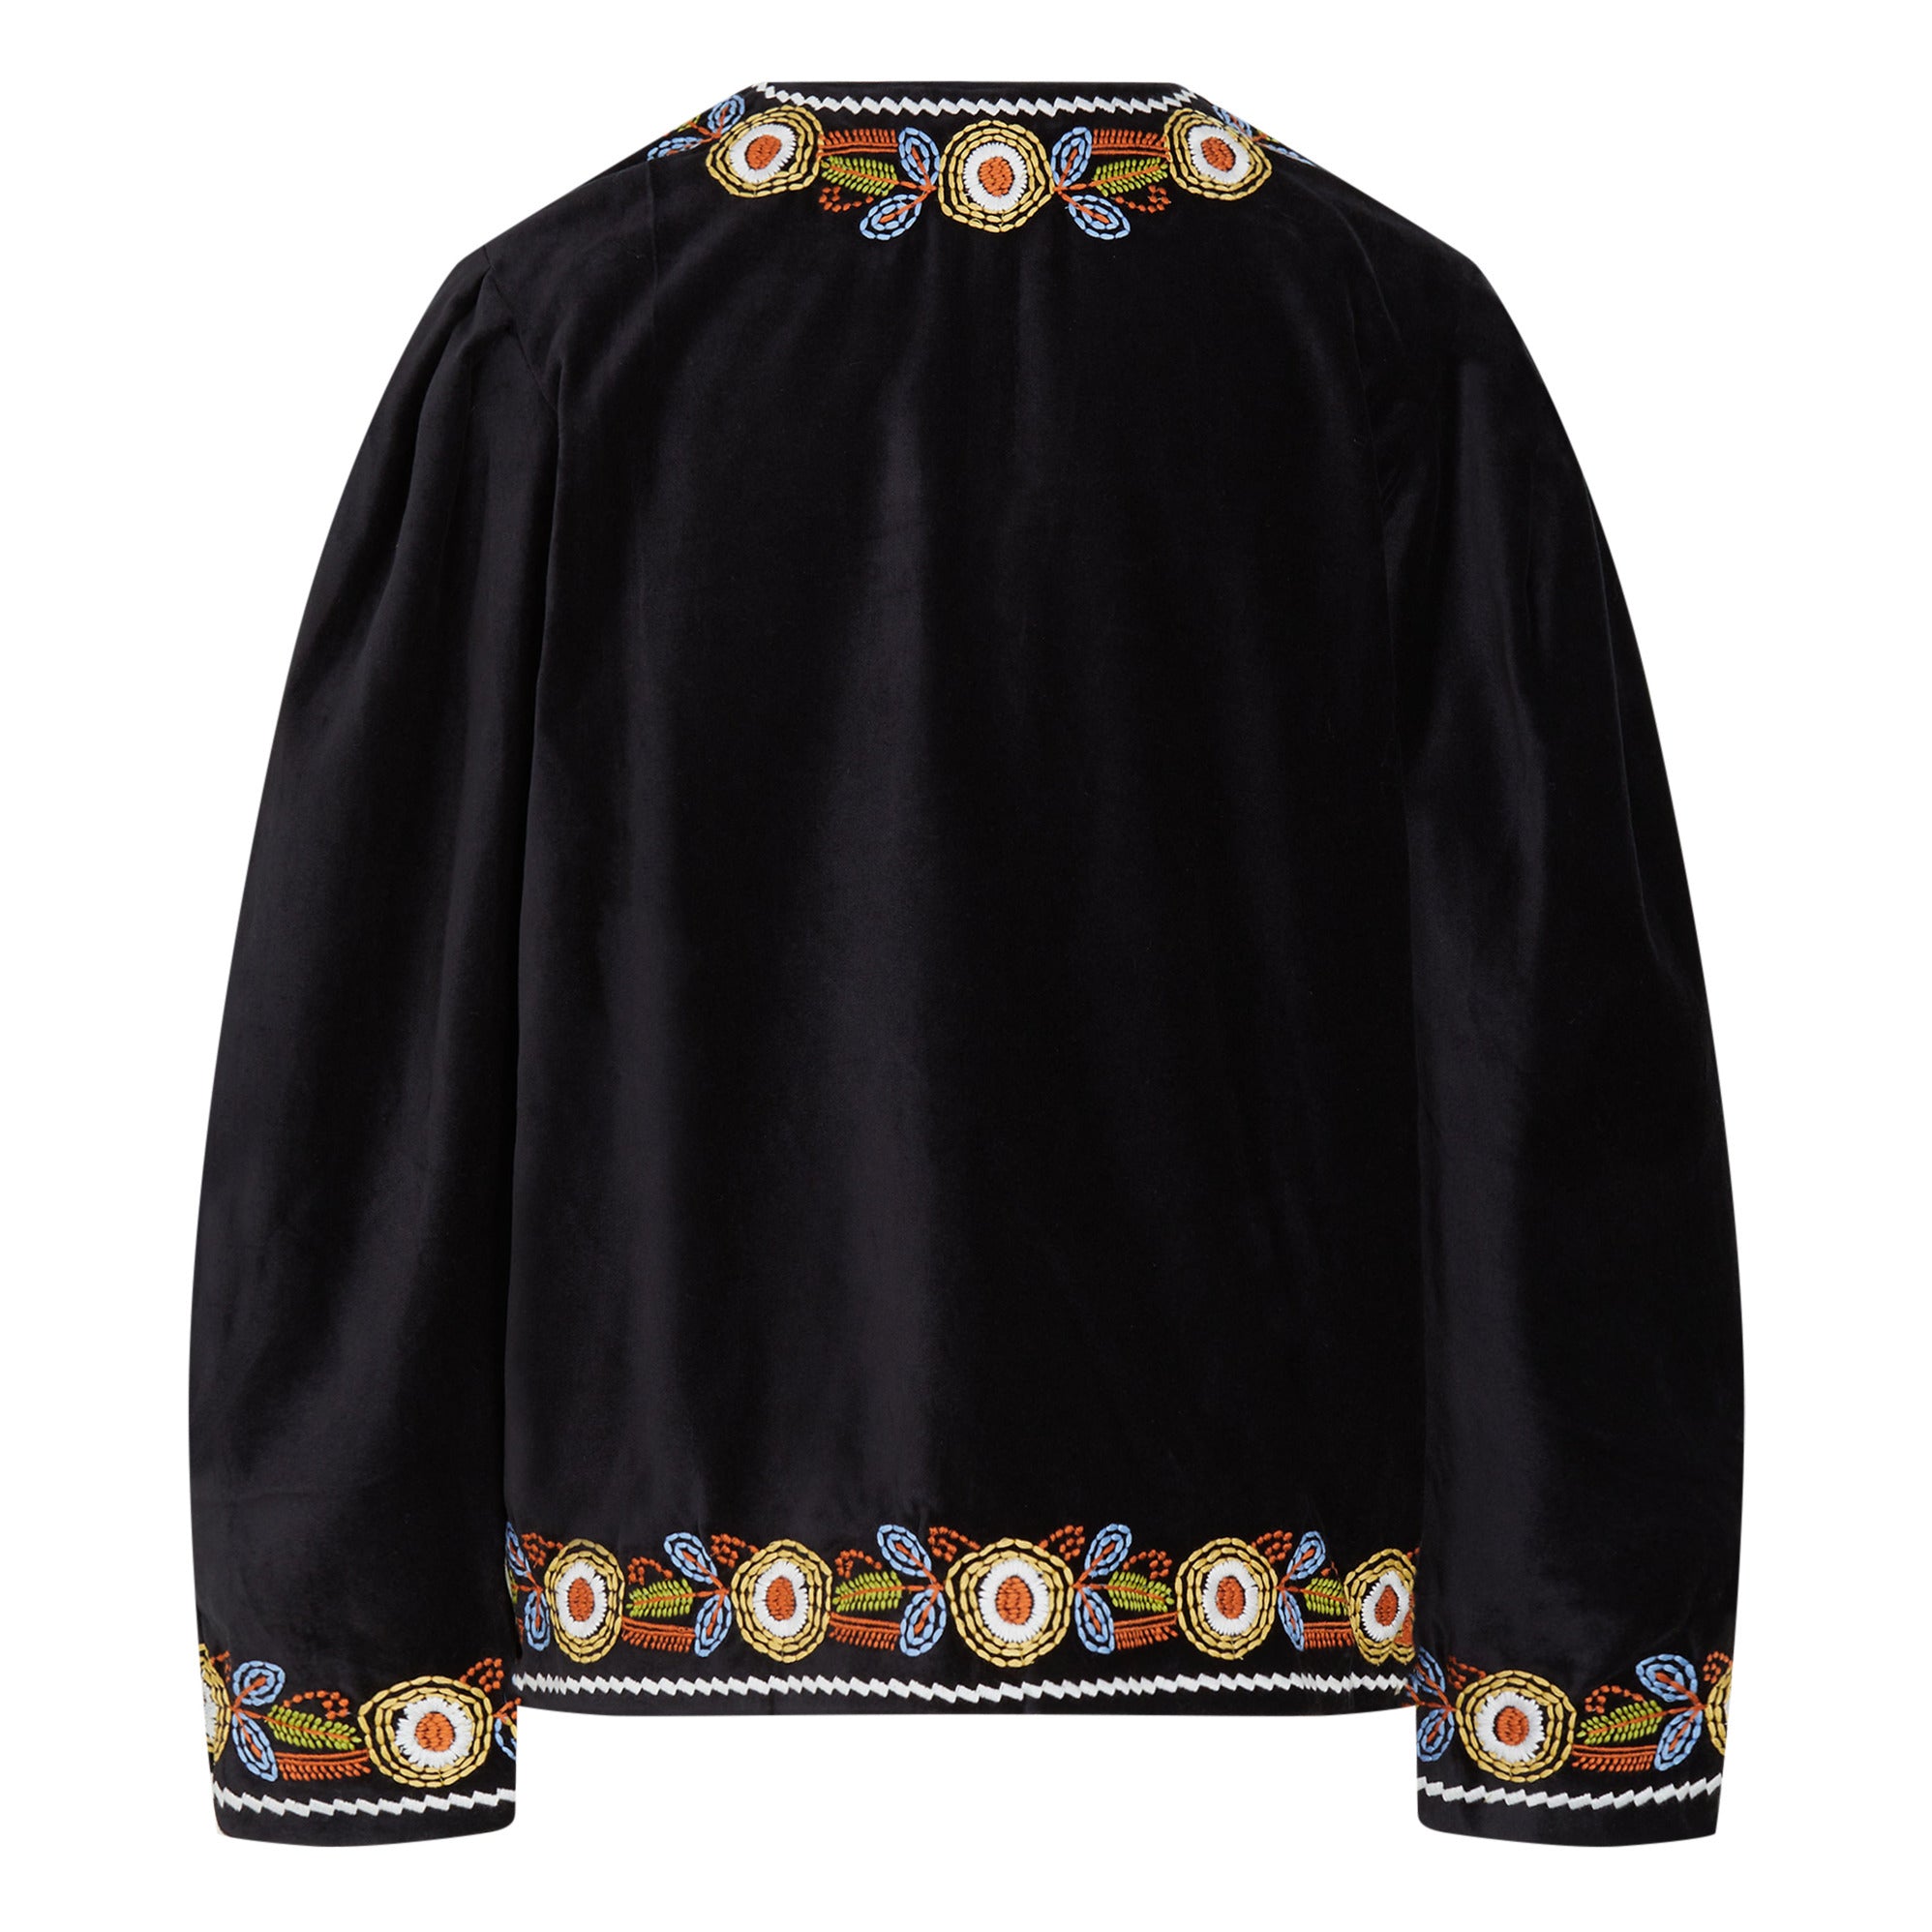 Sofia short embroidered black velvet jacket